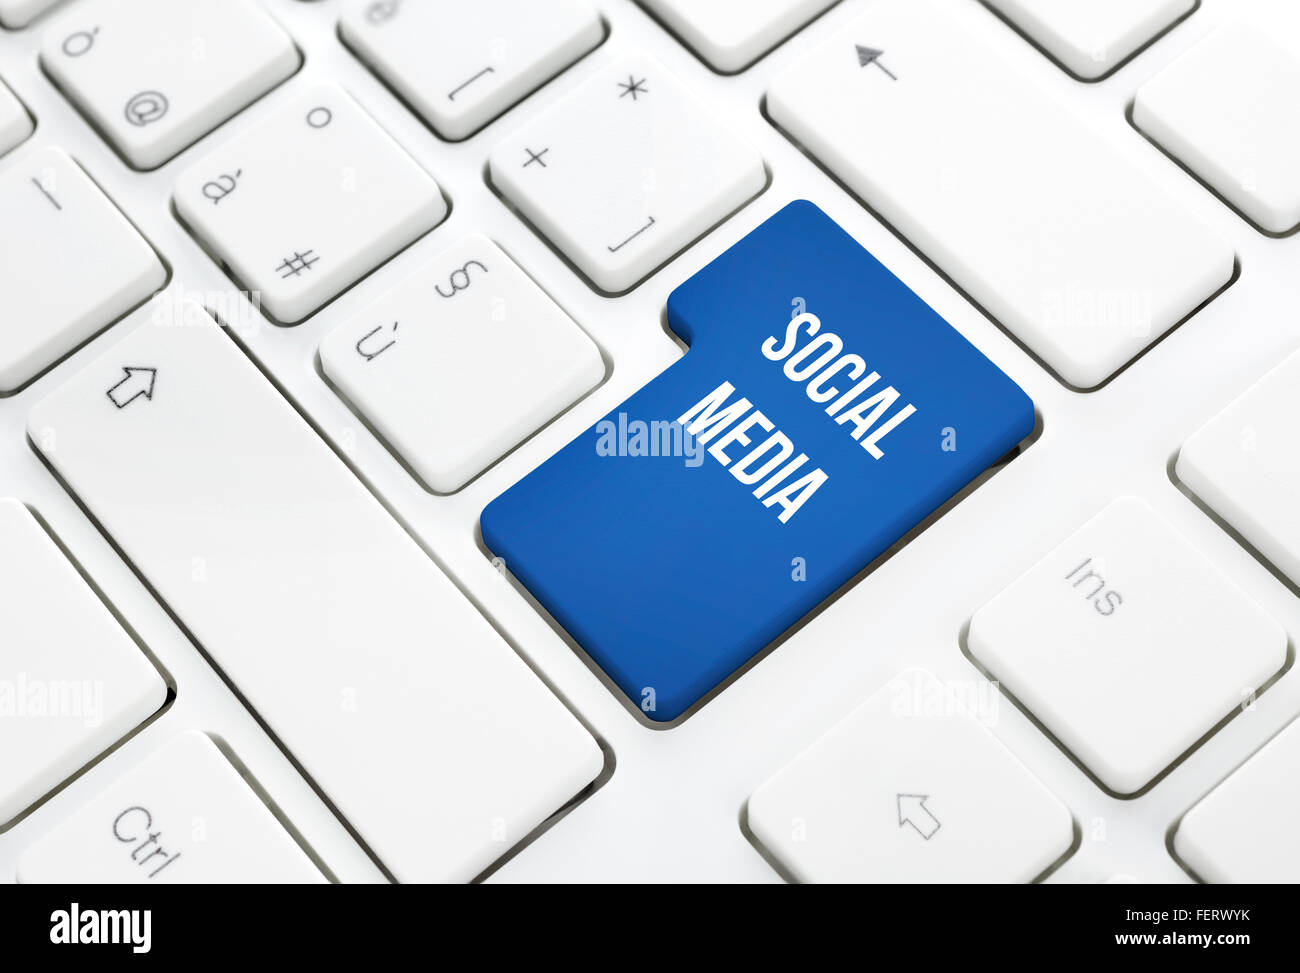 Soziale Medien-Netzwerk-Business-Konzept, blau eingeben oder Taste auf weiße Tastatur Fotografie. Stockfoto